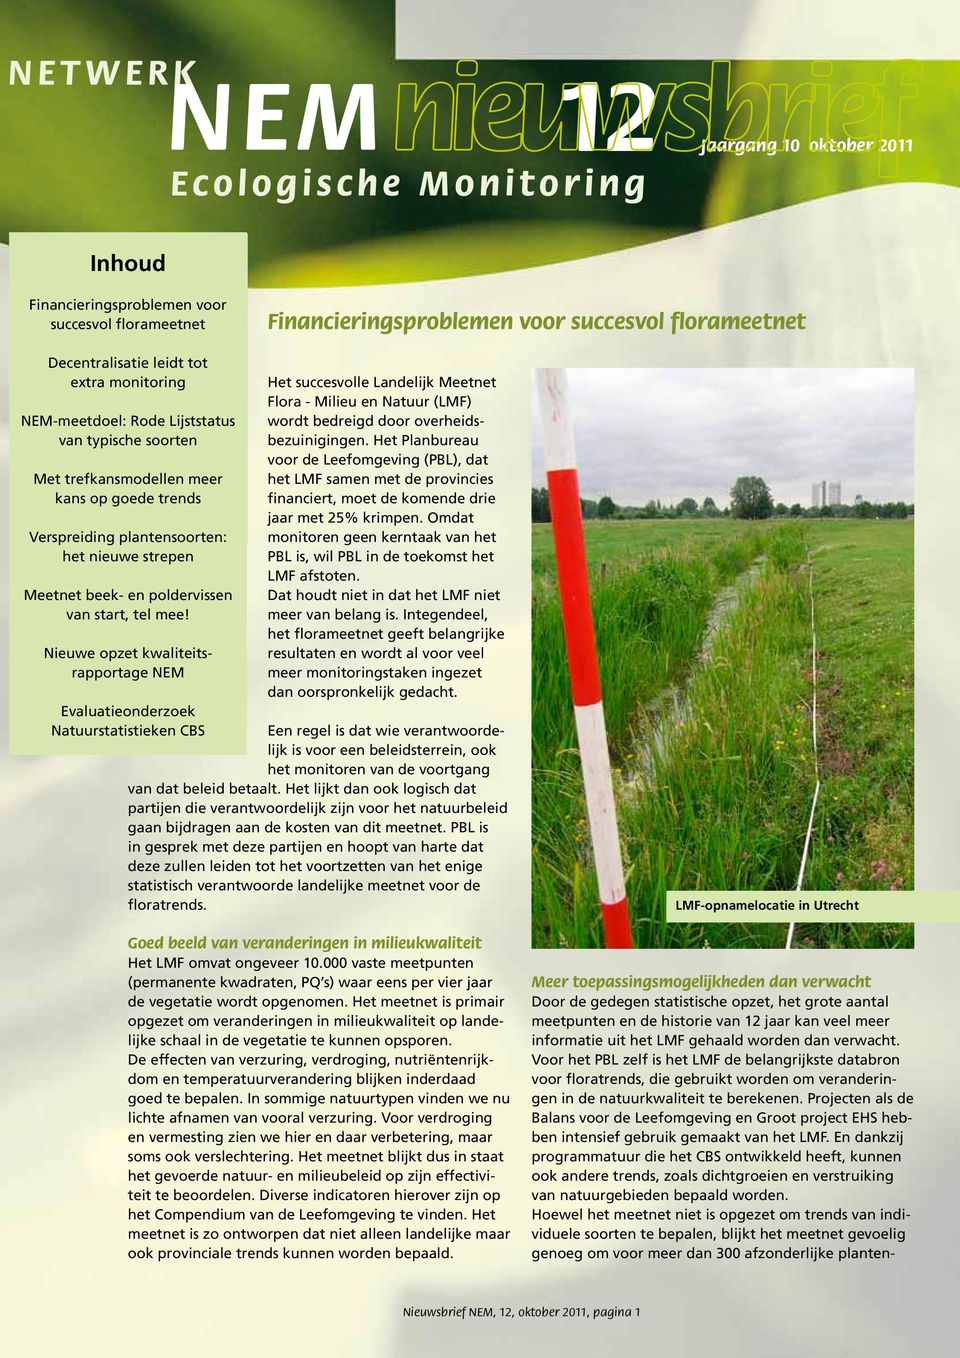 Nieuwe opzet kwaliteitsrapportage NEM Het succesvolle Landelijk Meetnet Flora - Milieu en Natuur (LMF) wordt bedreigd door overheidsbezuinigingen.